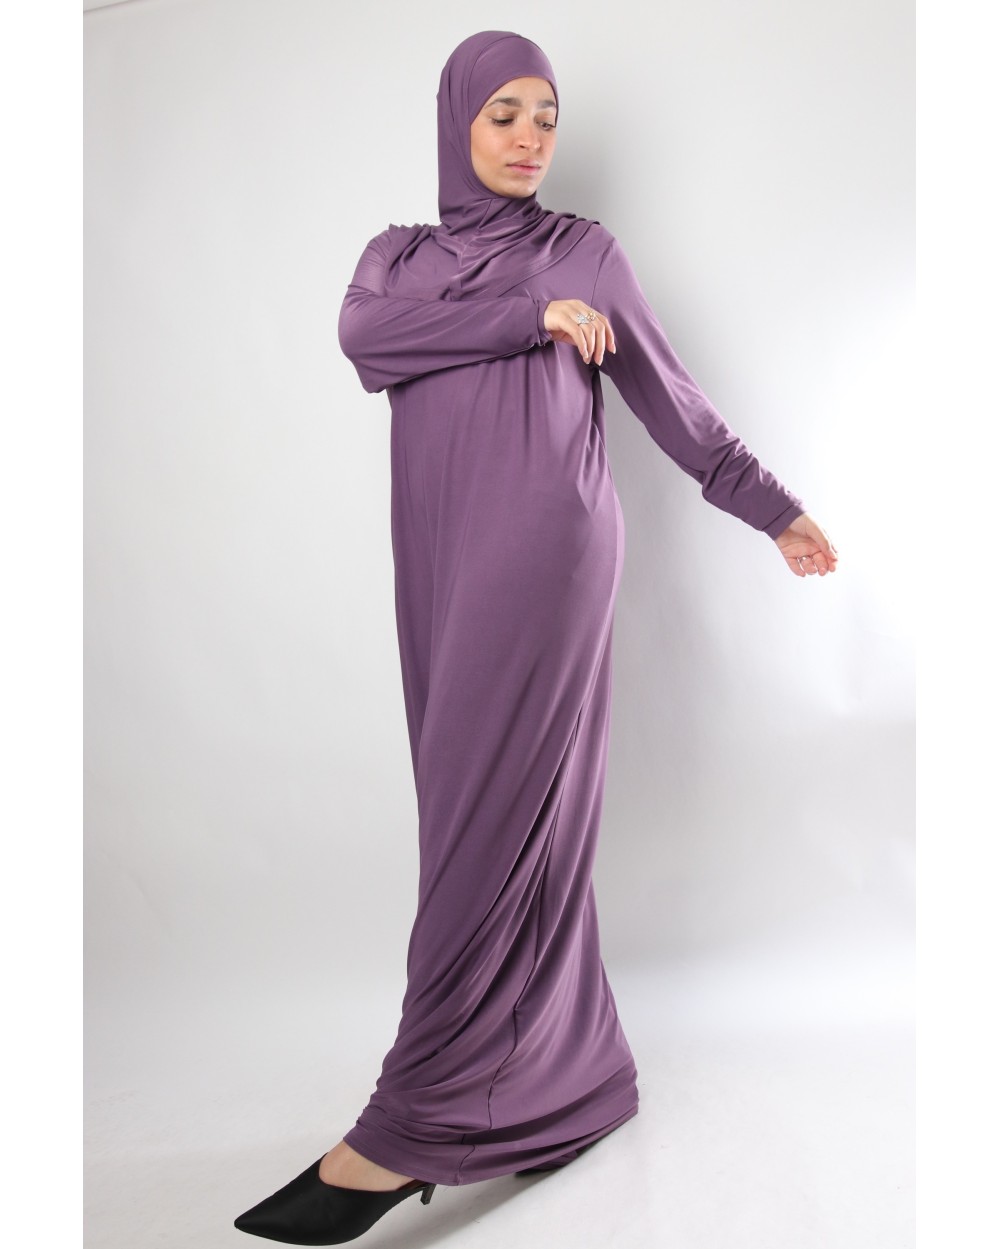 Rahama prayer dress hijab